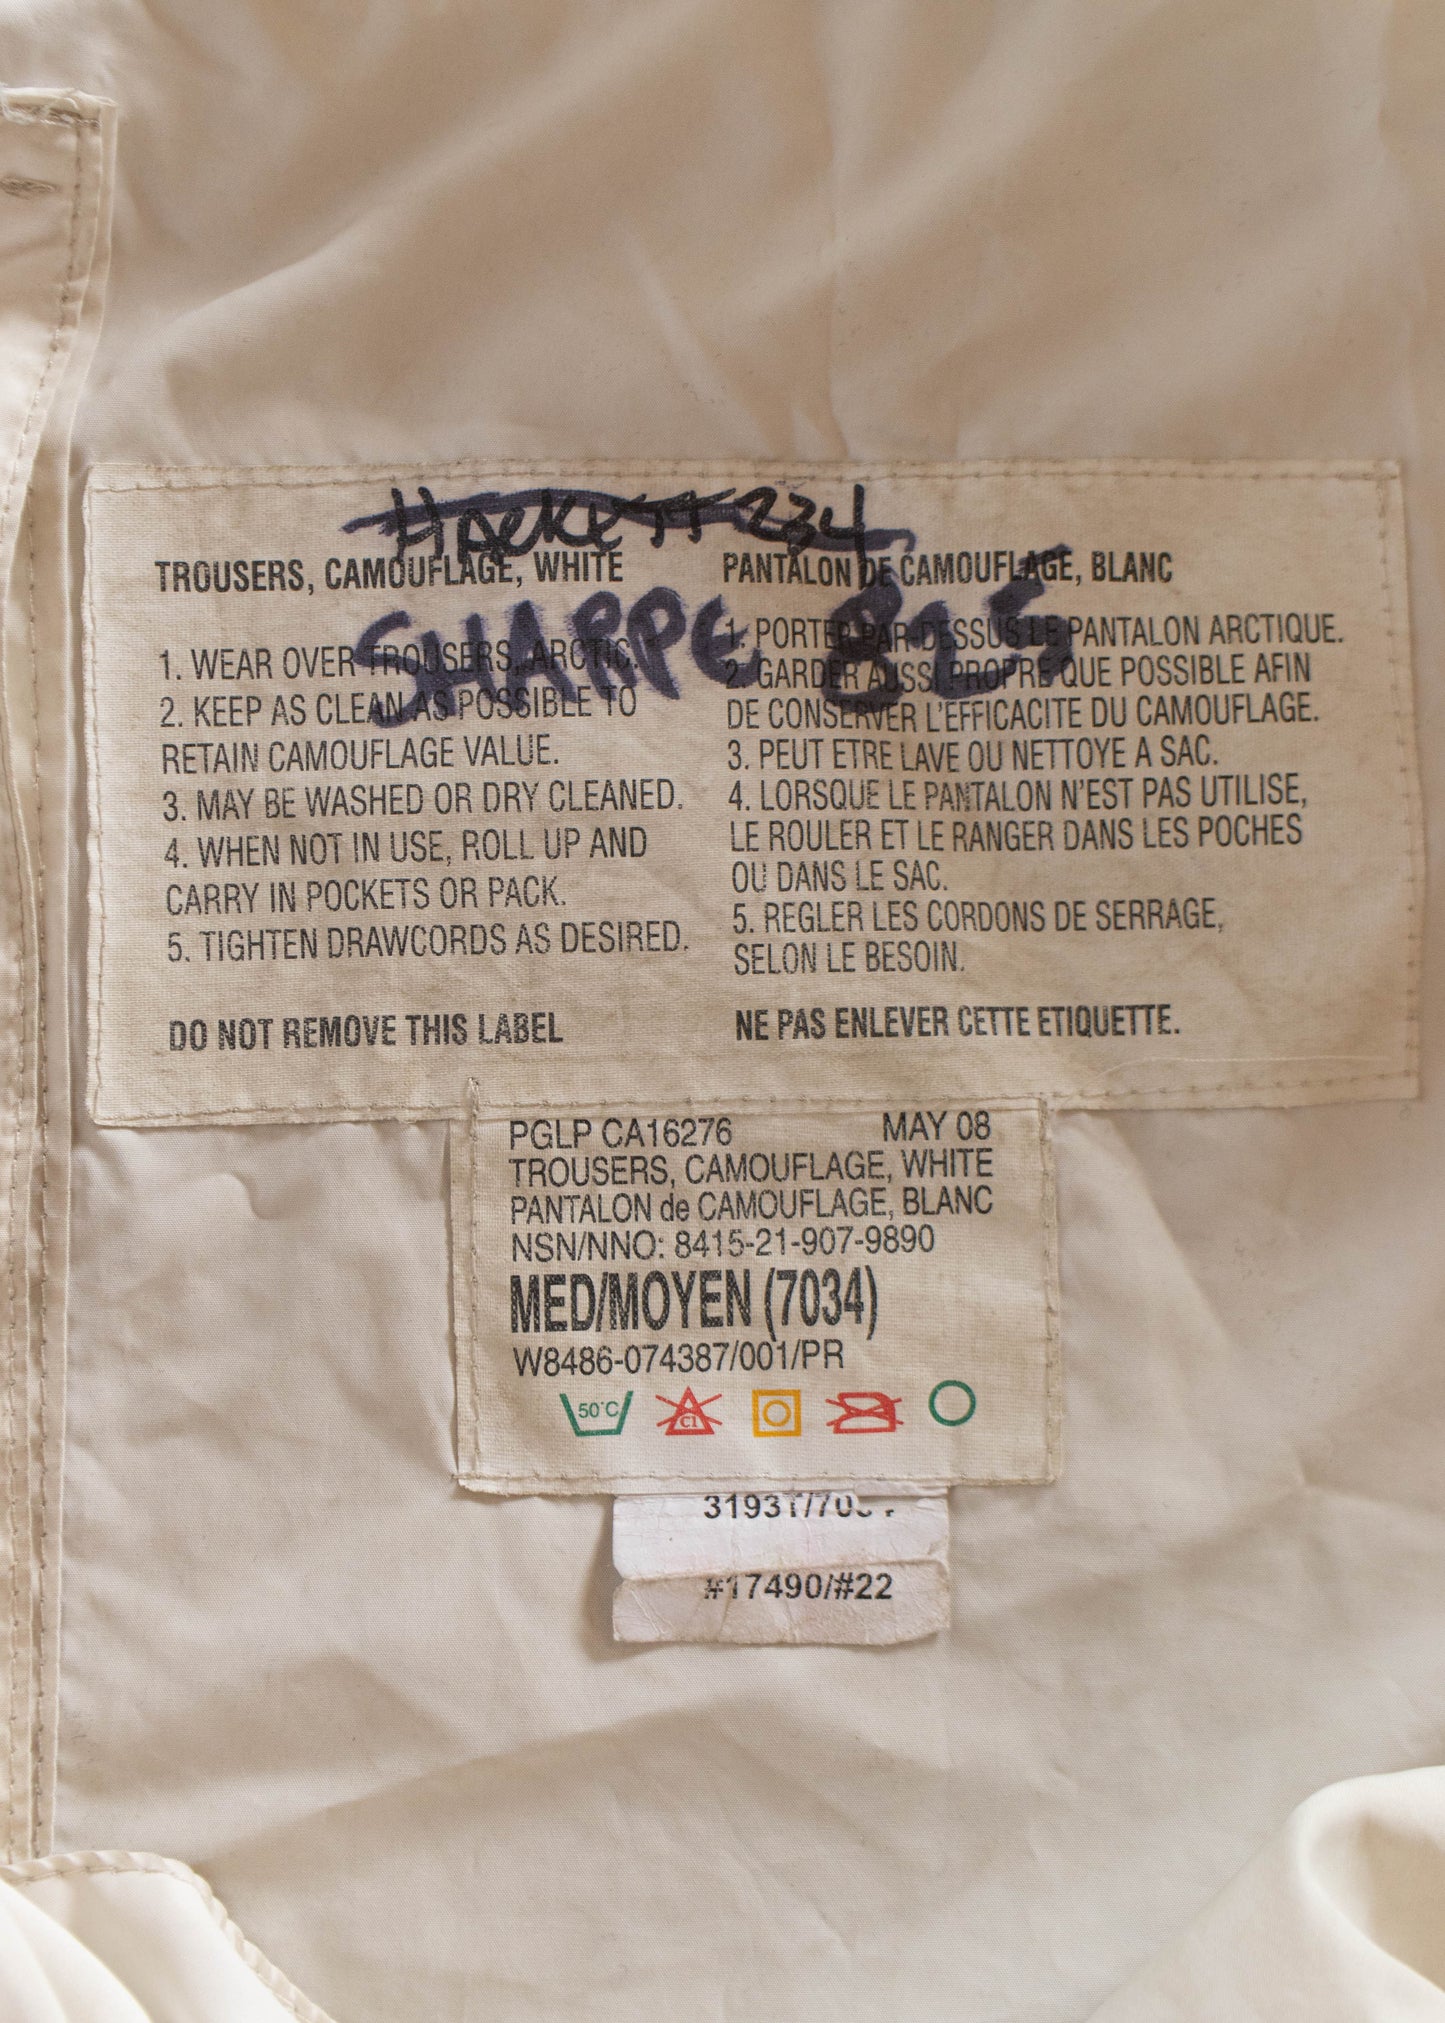 1990s Canadian Military Snow Camo Parachute Pants Size M/L